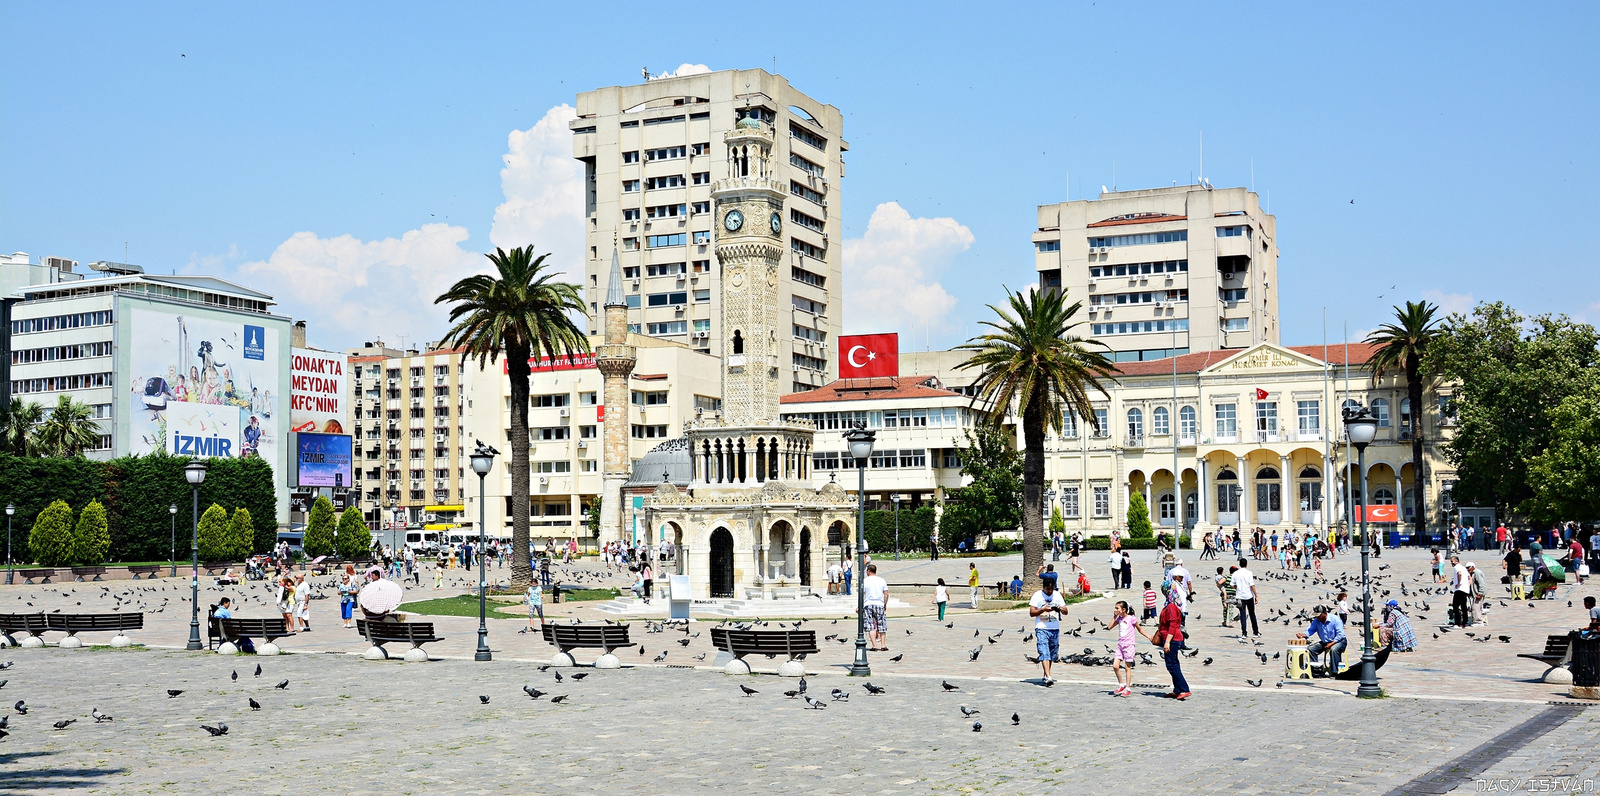 Izmir - Turkey 2015 830